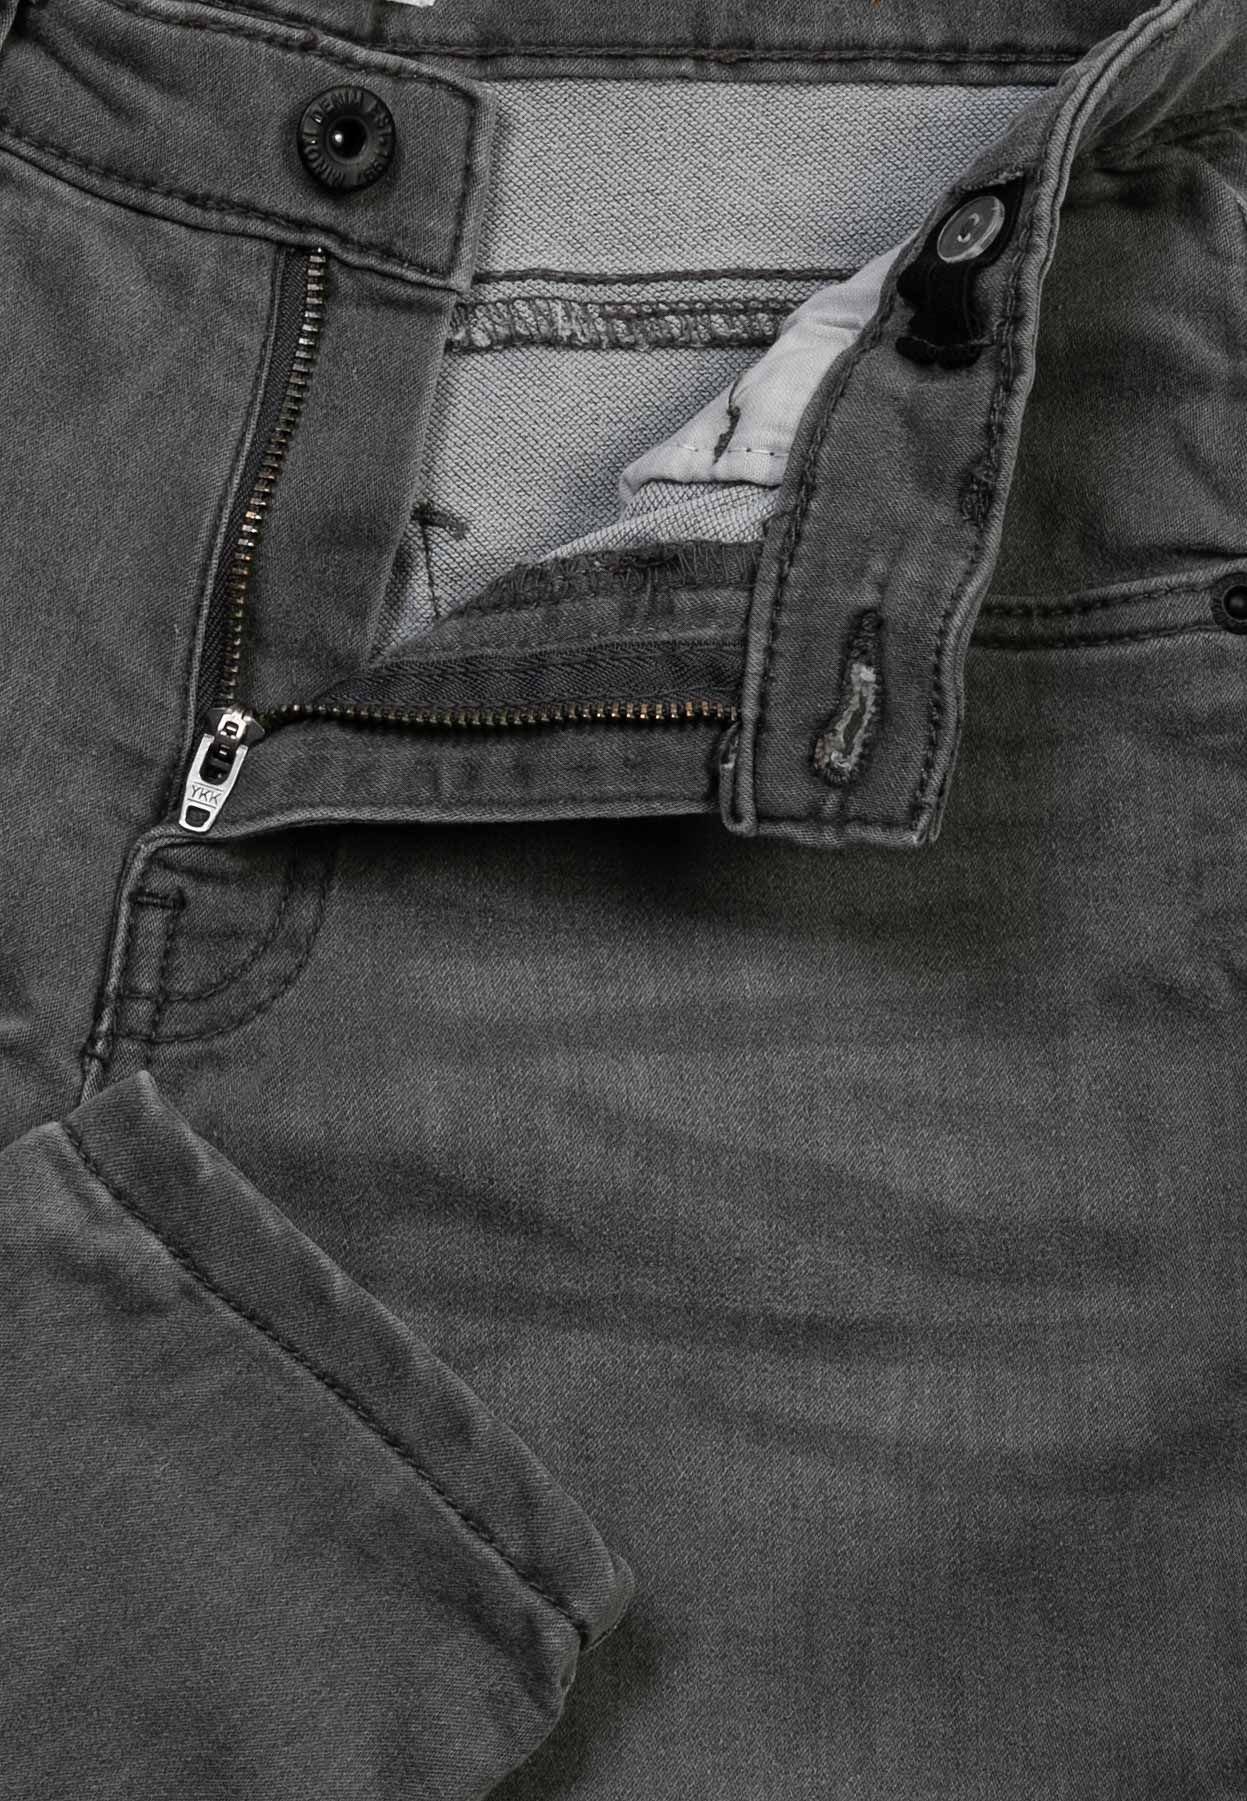 Denim-Schwarz Sweatjeans Gestrickte (1y-14y) Denim-Jeans MINOTI Struktur mit